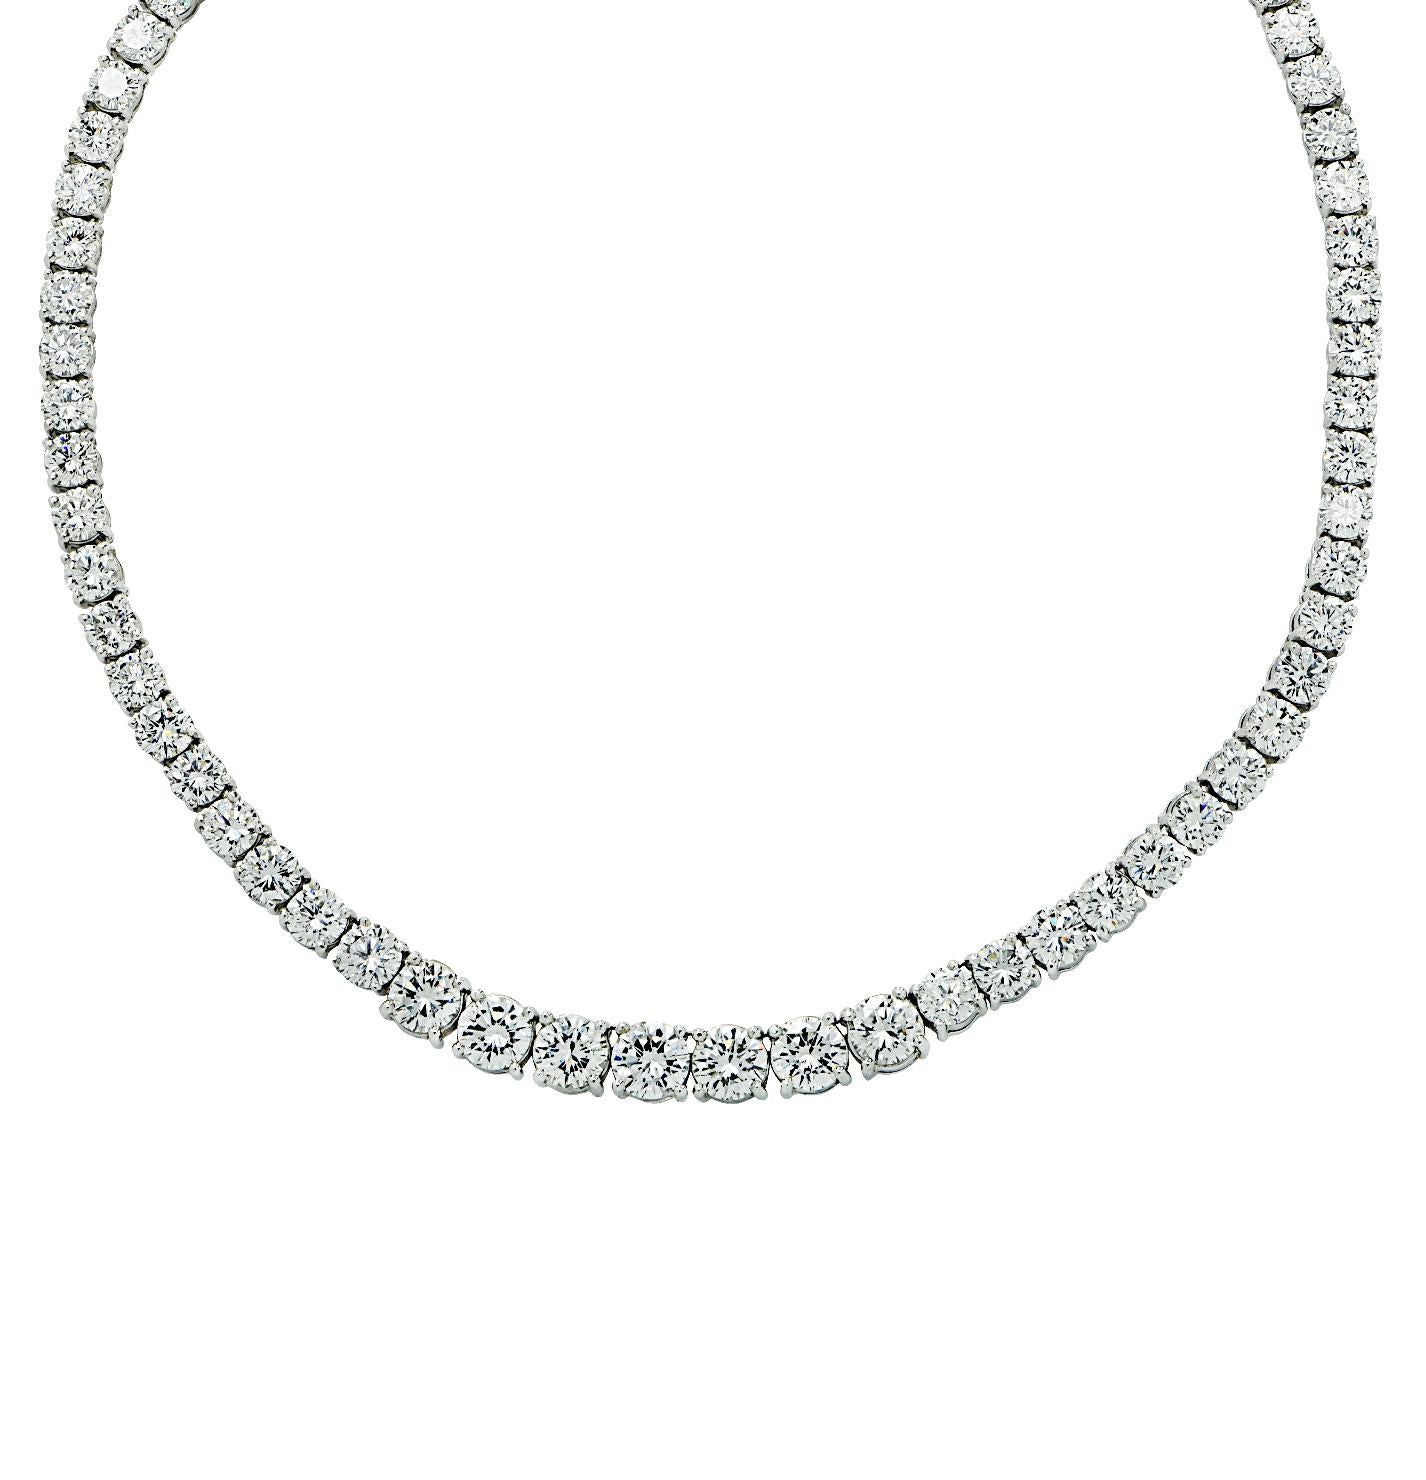 Brilliant Cut Vivid Diamonds 39.22 Carat Diamond Riviera Necklace For Sale